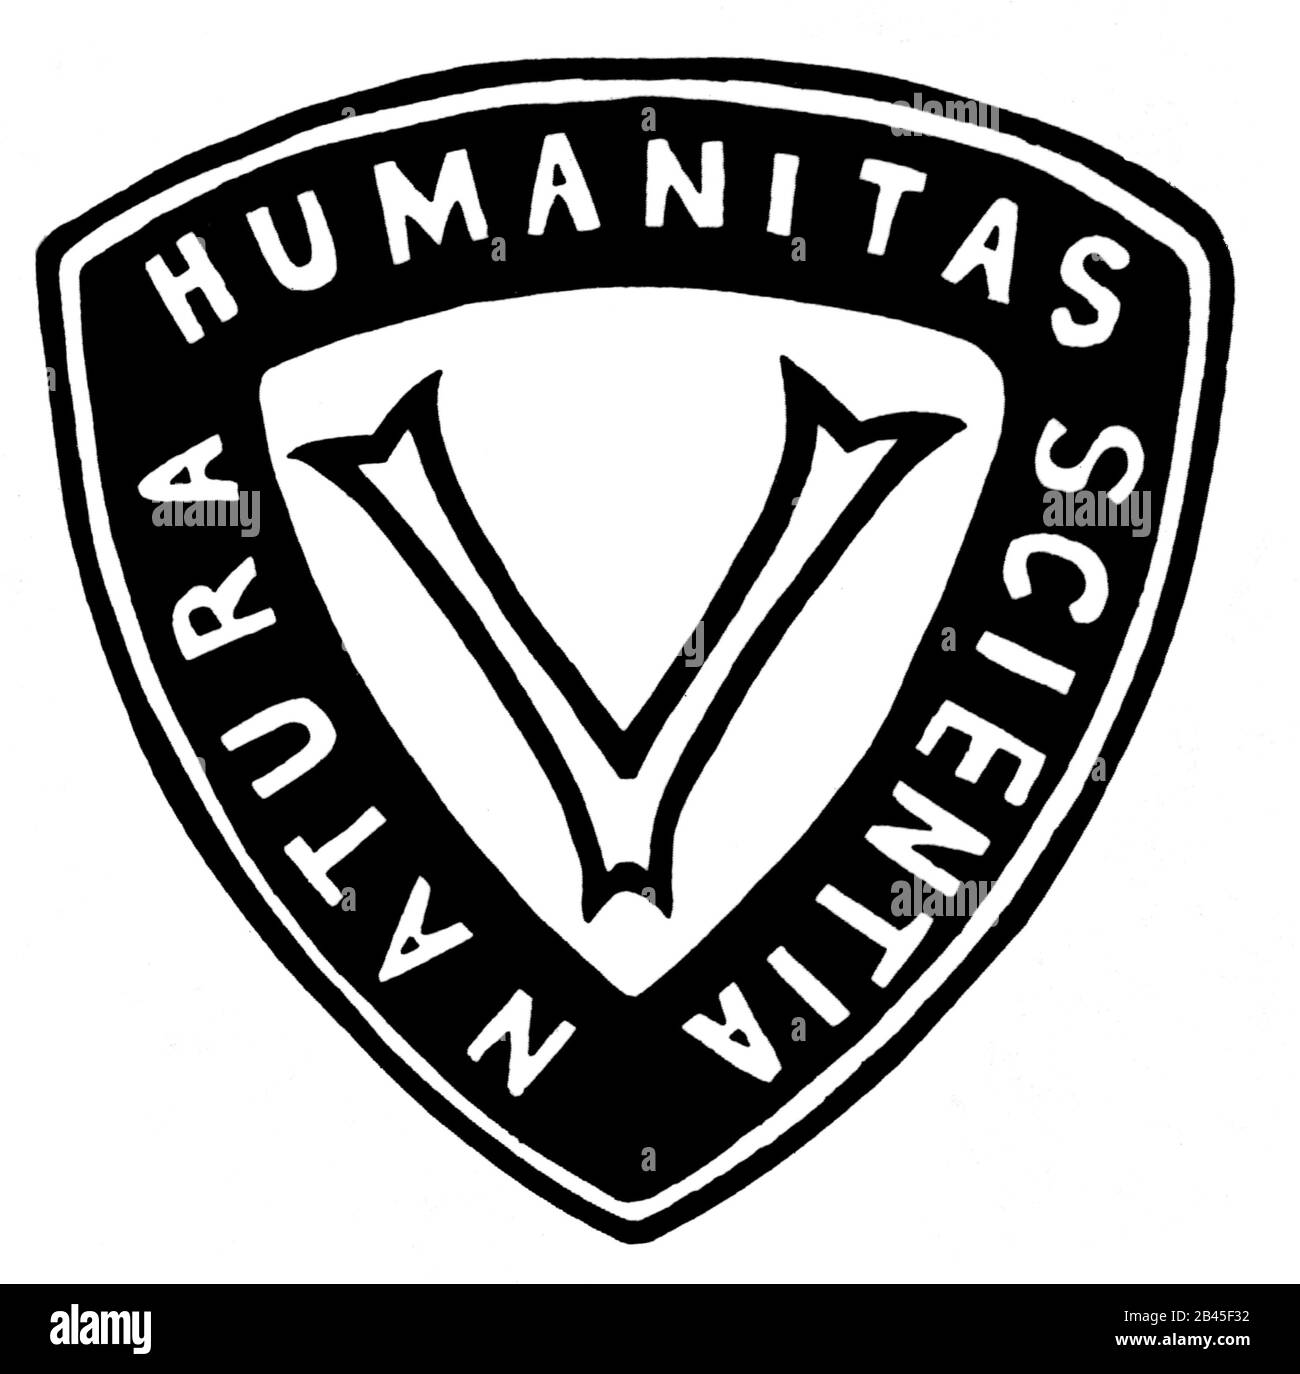 Das Logo der Vegetarian Society, Natura Humanitas Scientia, London, England, Großbritannien, Großbritannien, entworfen von Mahatma Gandhi, 1890, alter Jahrgang 1900s Bild Stockfoto